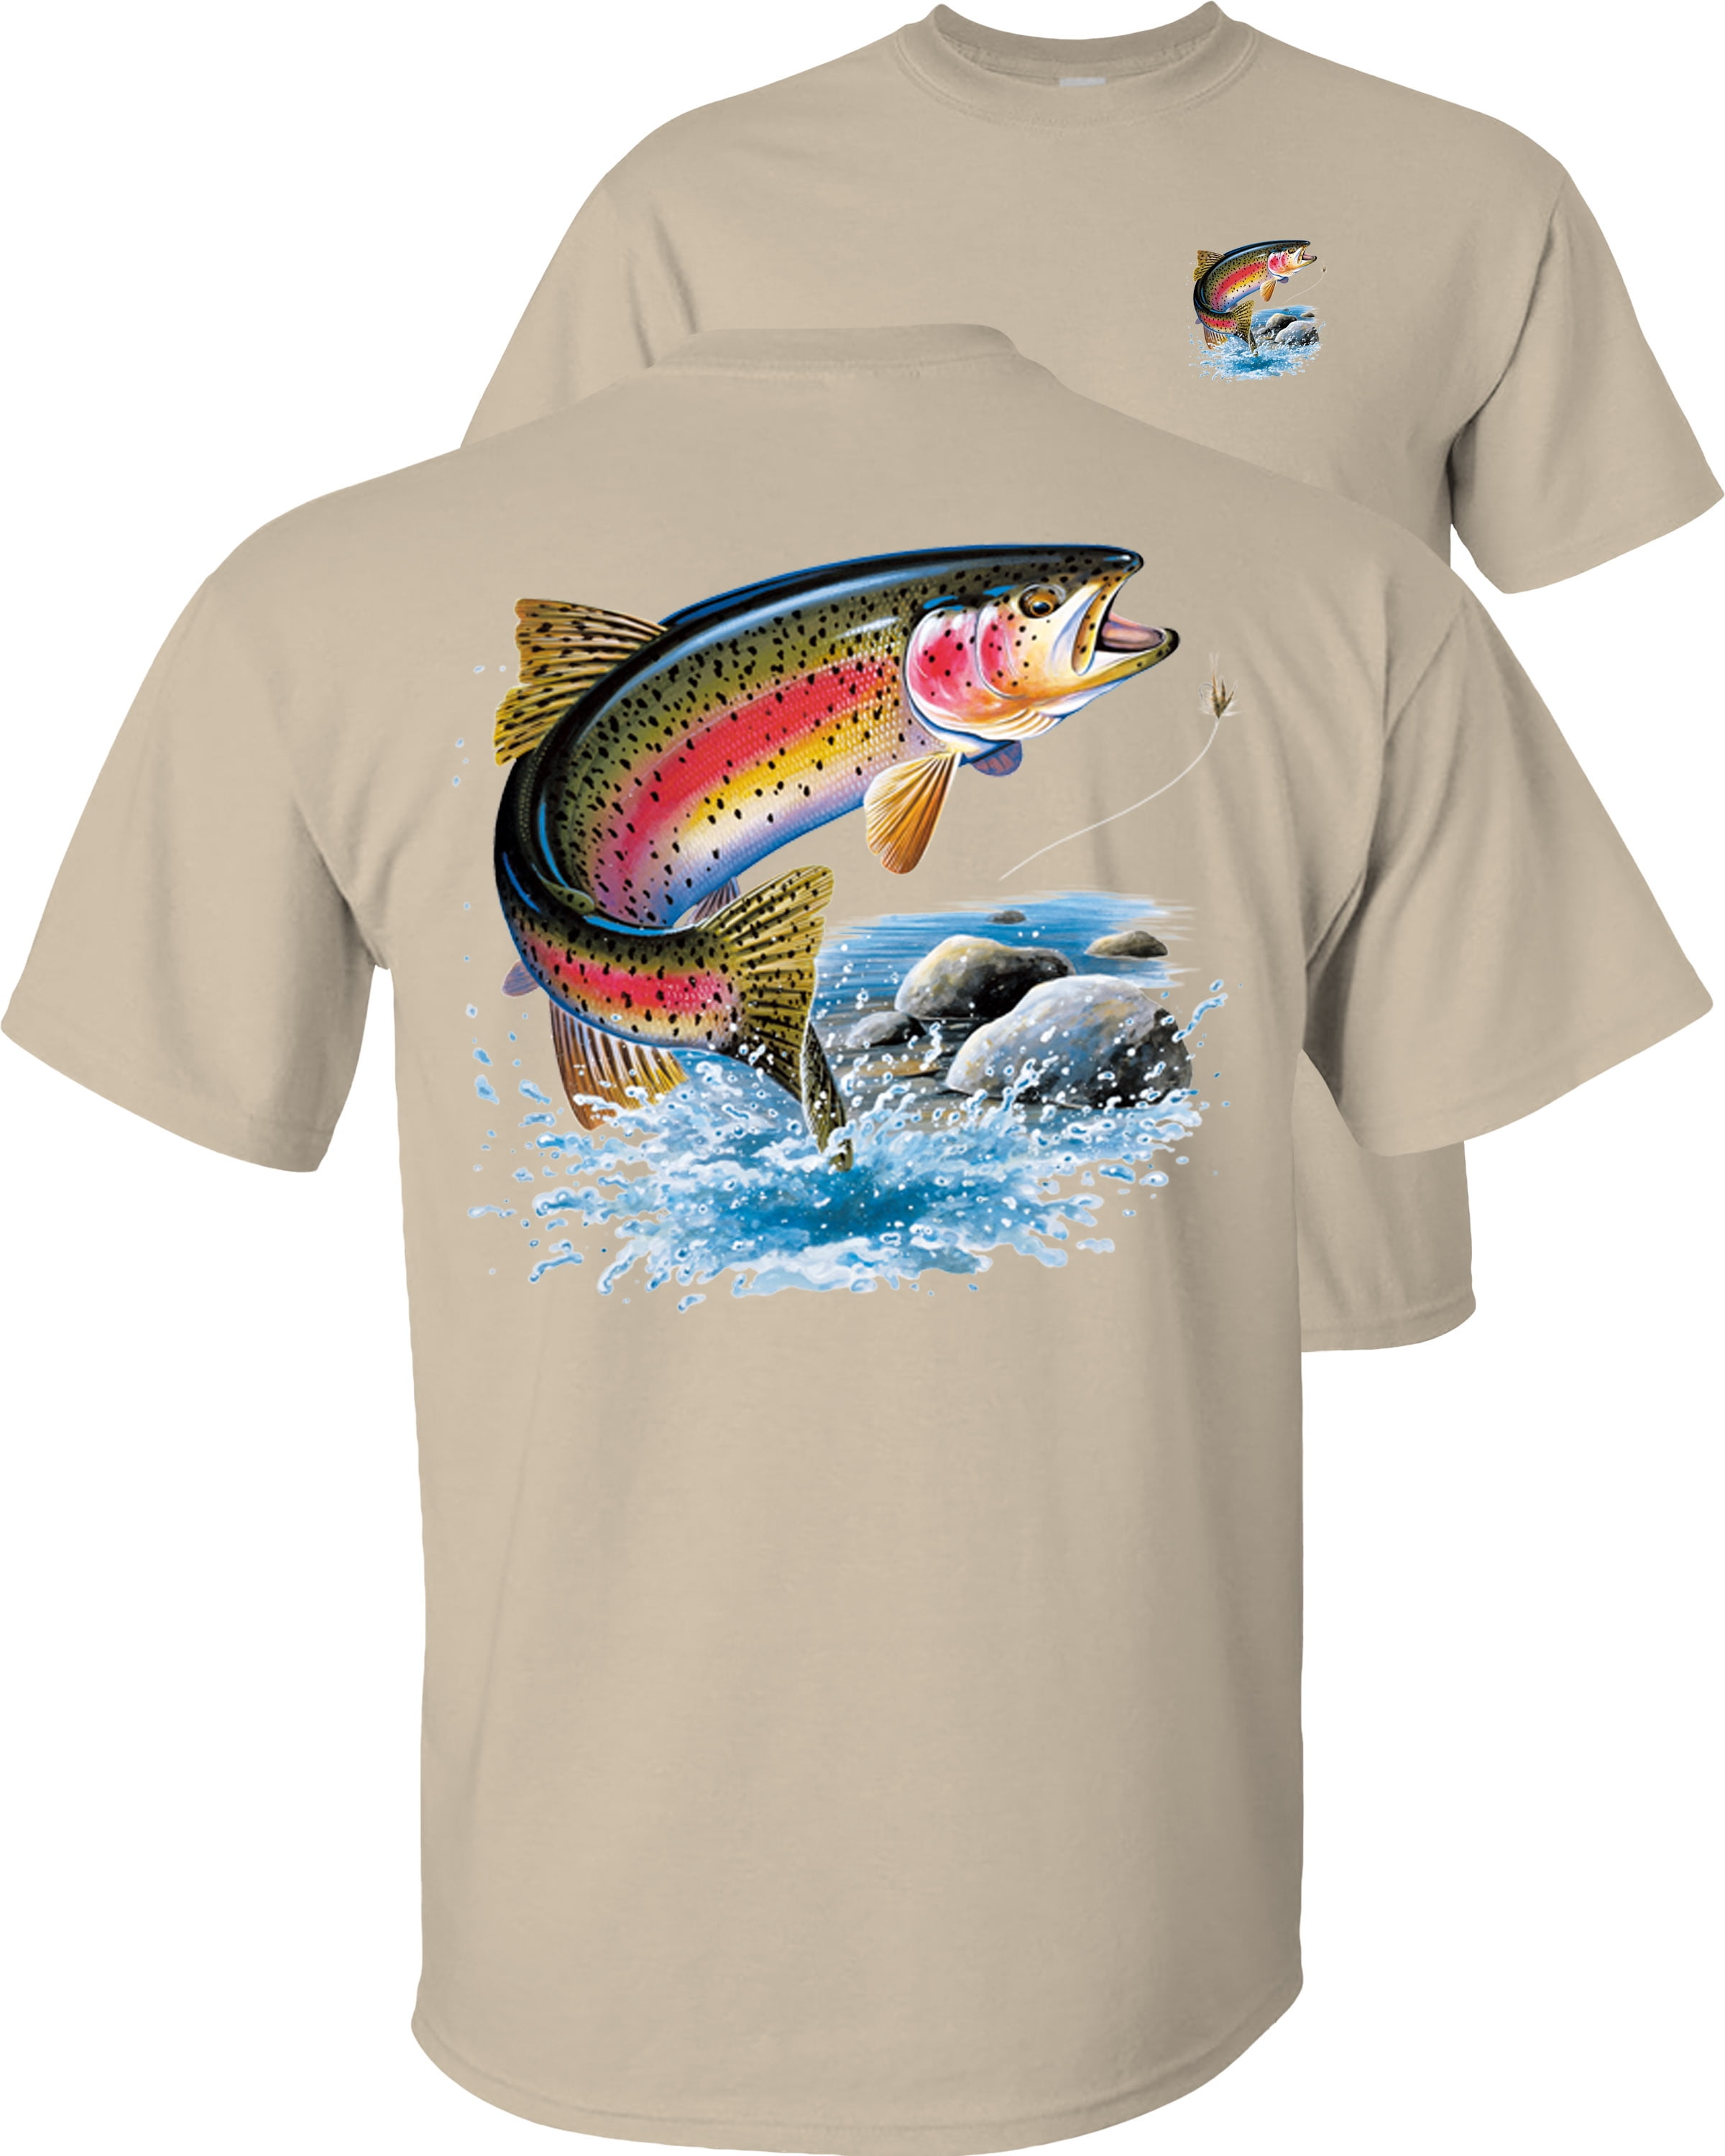 Farlows - Fly Fishing Shirts and T-Shirts